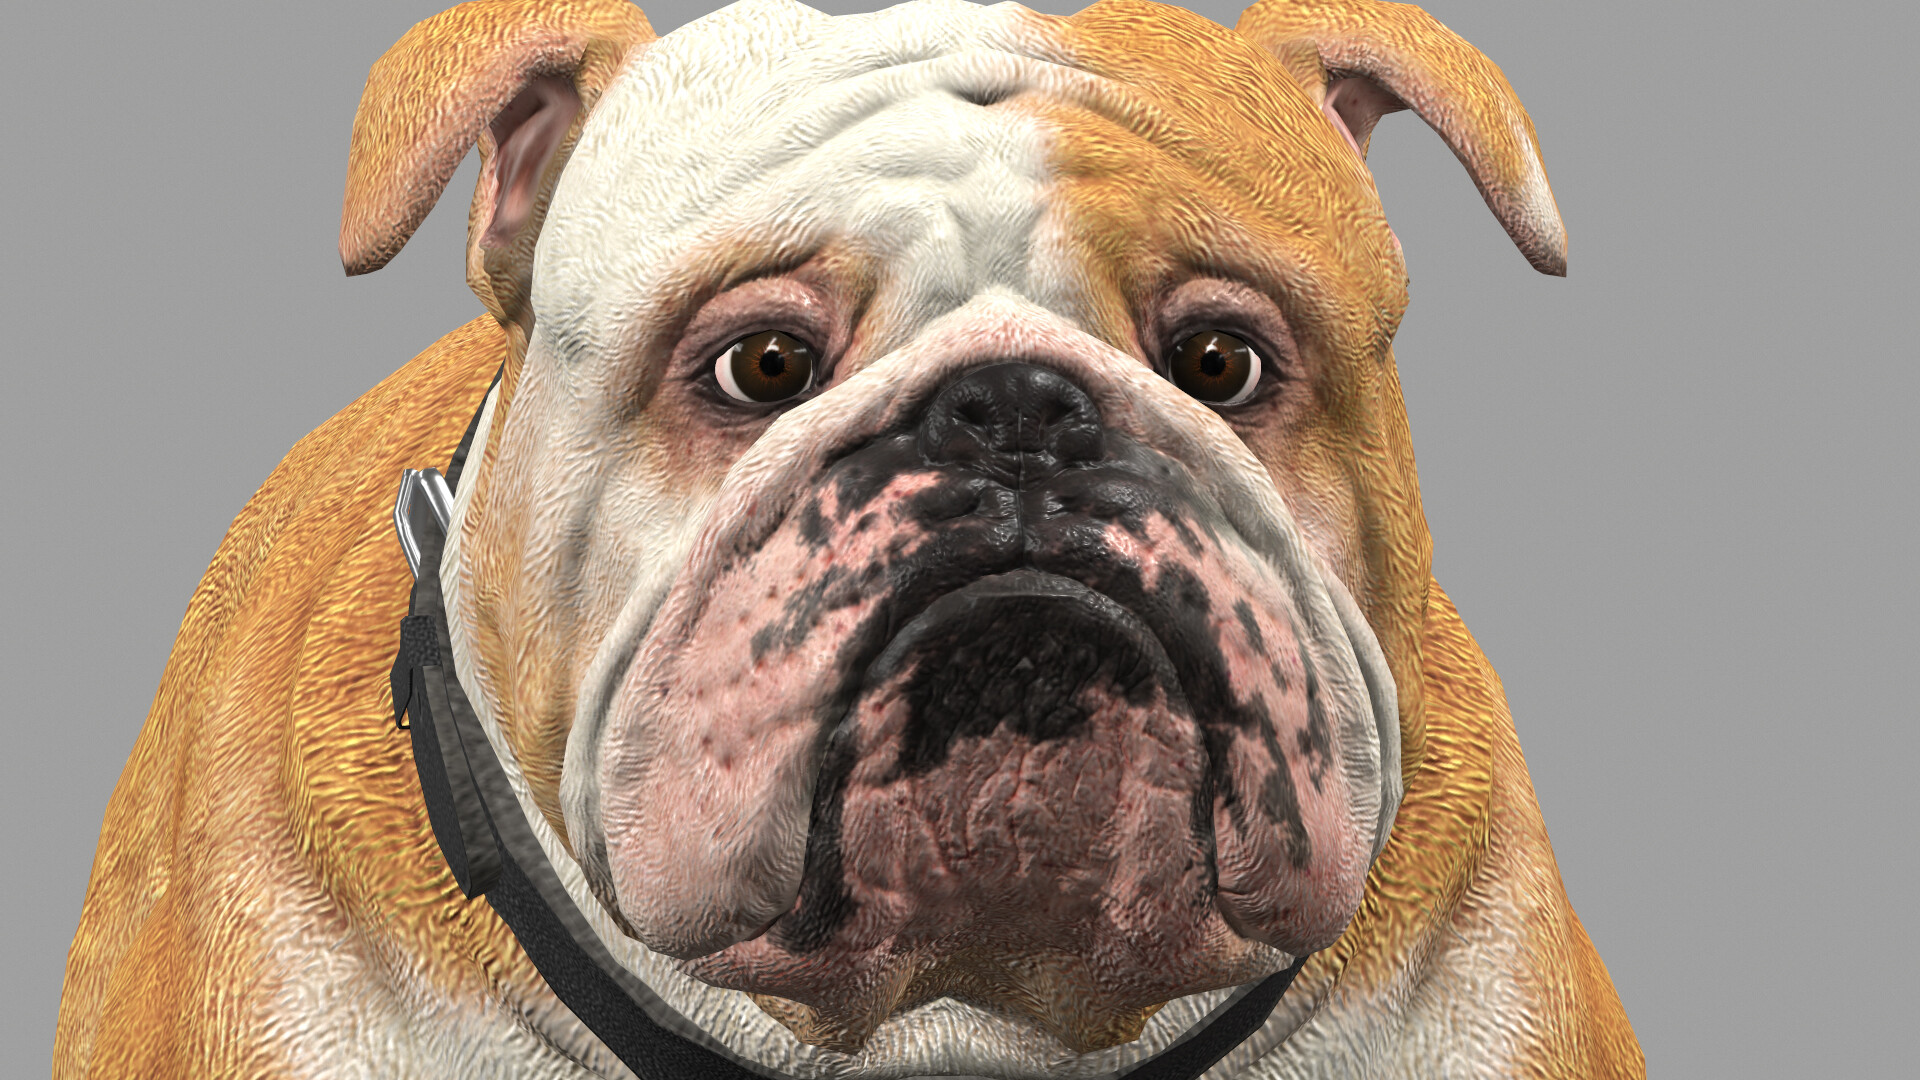 ArtStation - Game Asset Dog